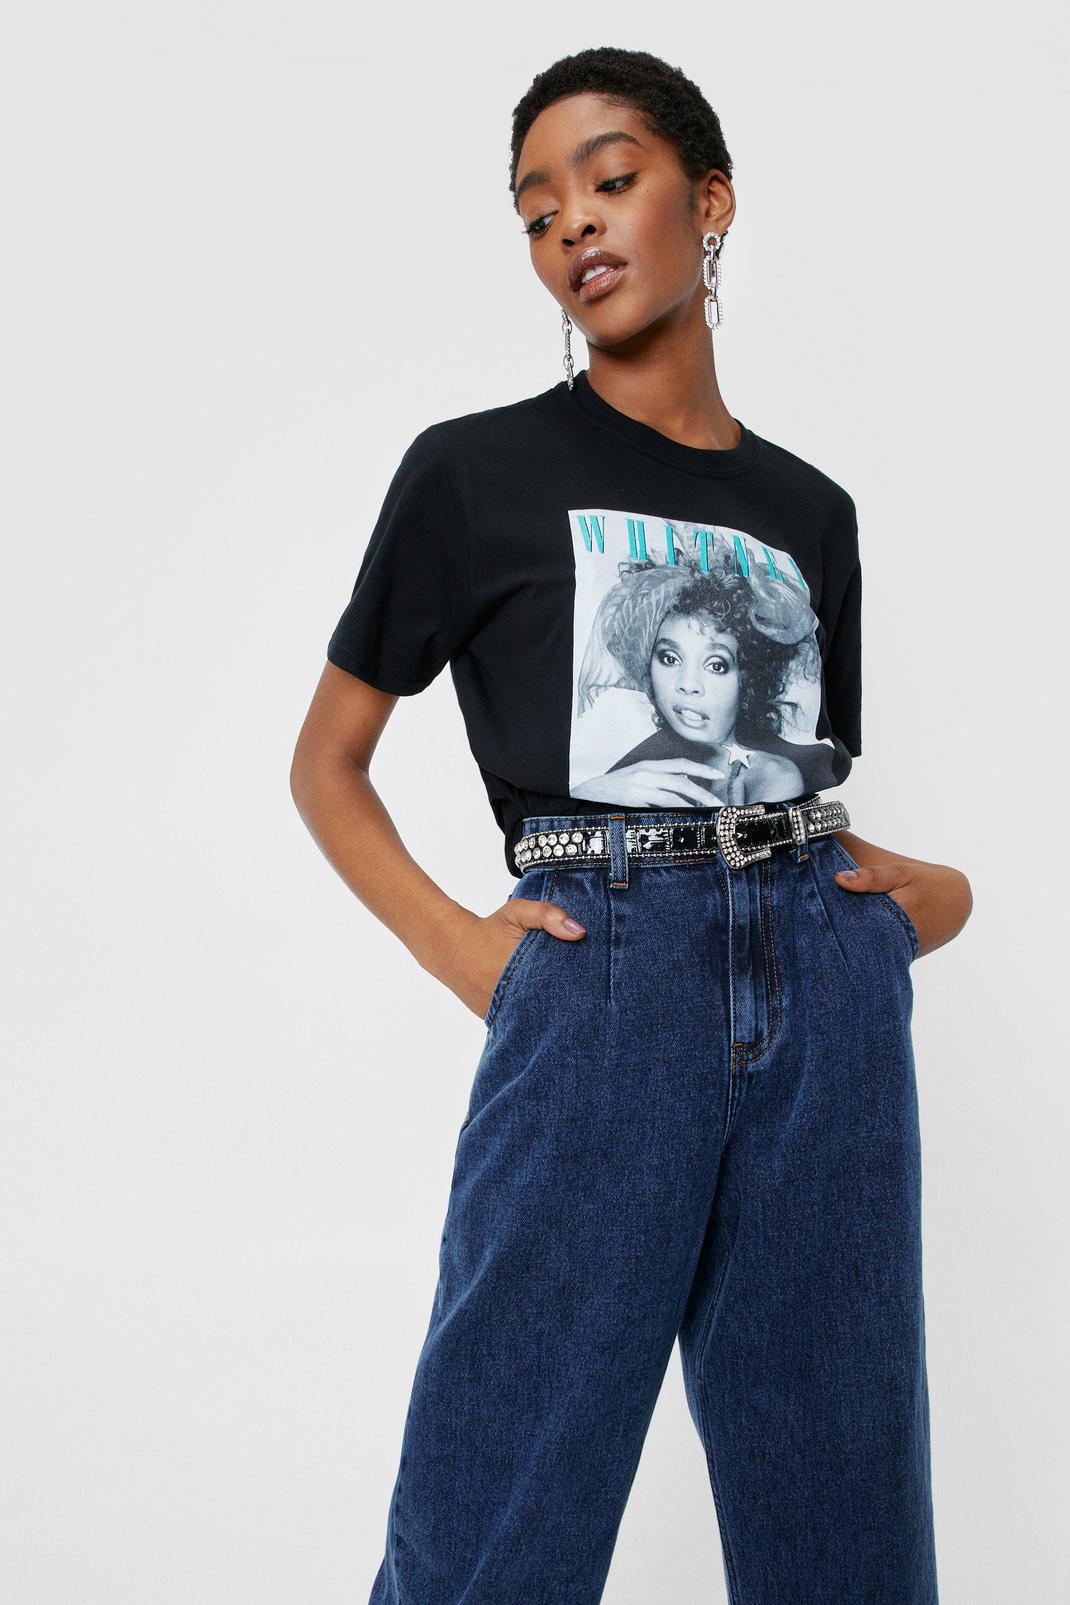 Black Whitney Houston Oversized Graphic T-Shirt image number 1